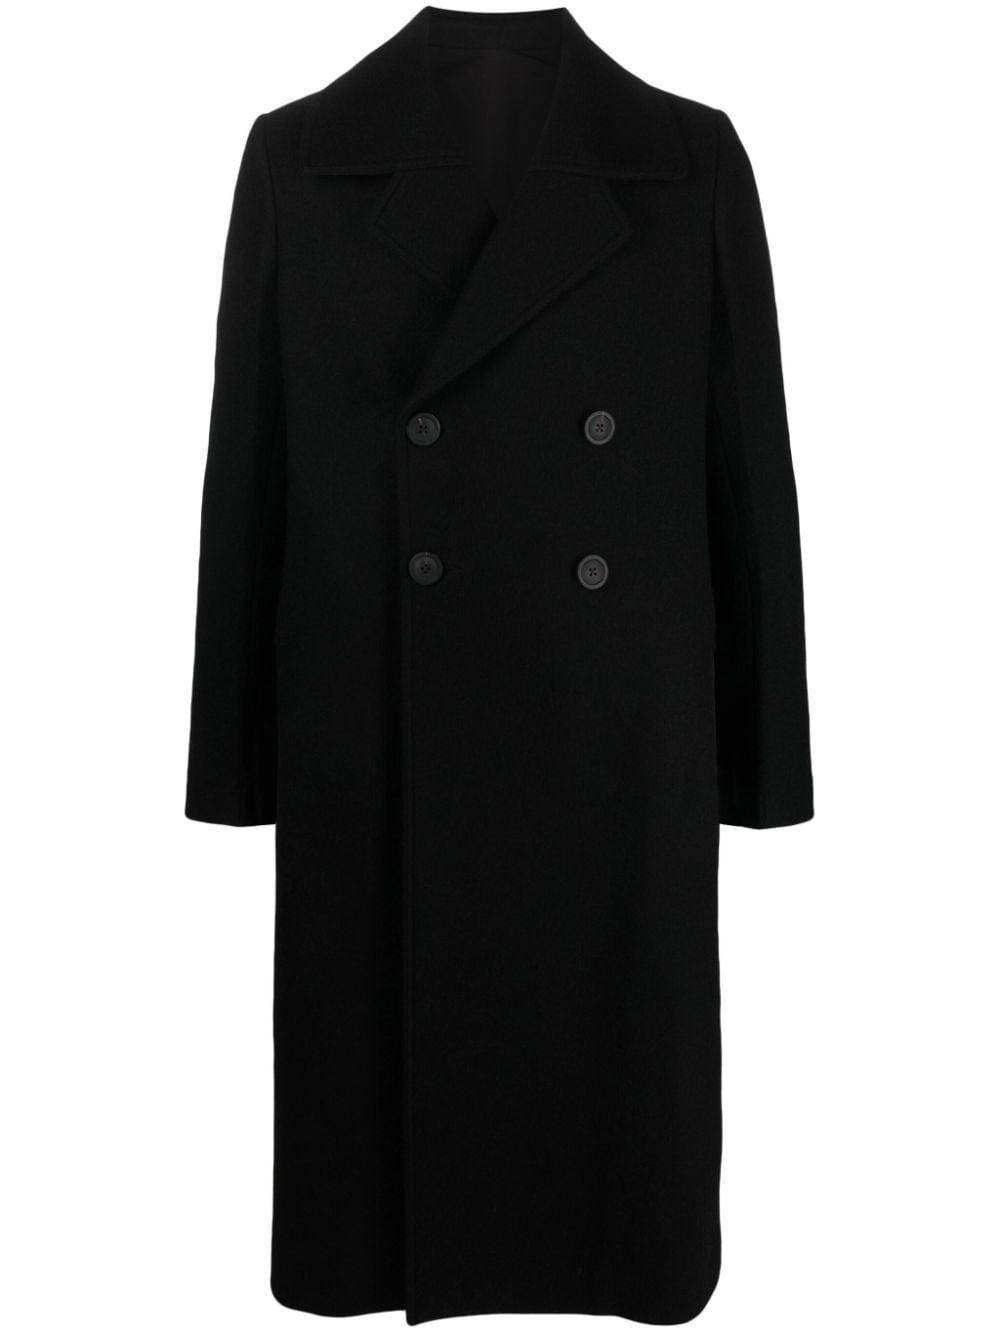 New Bell virgin wool coat - 1